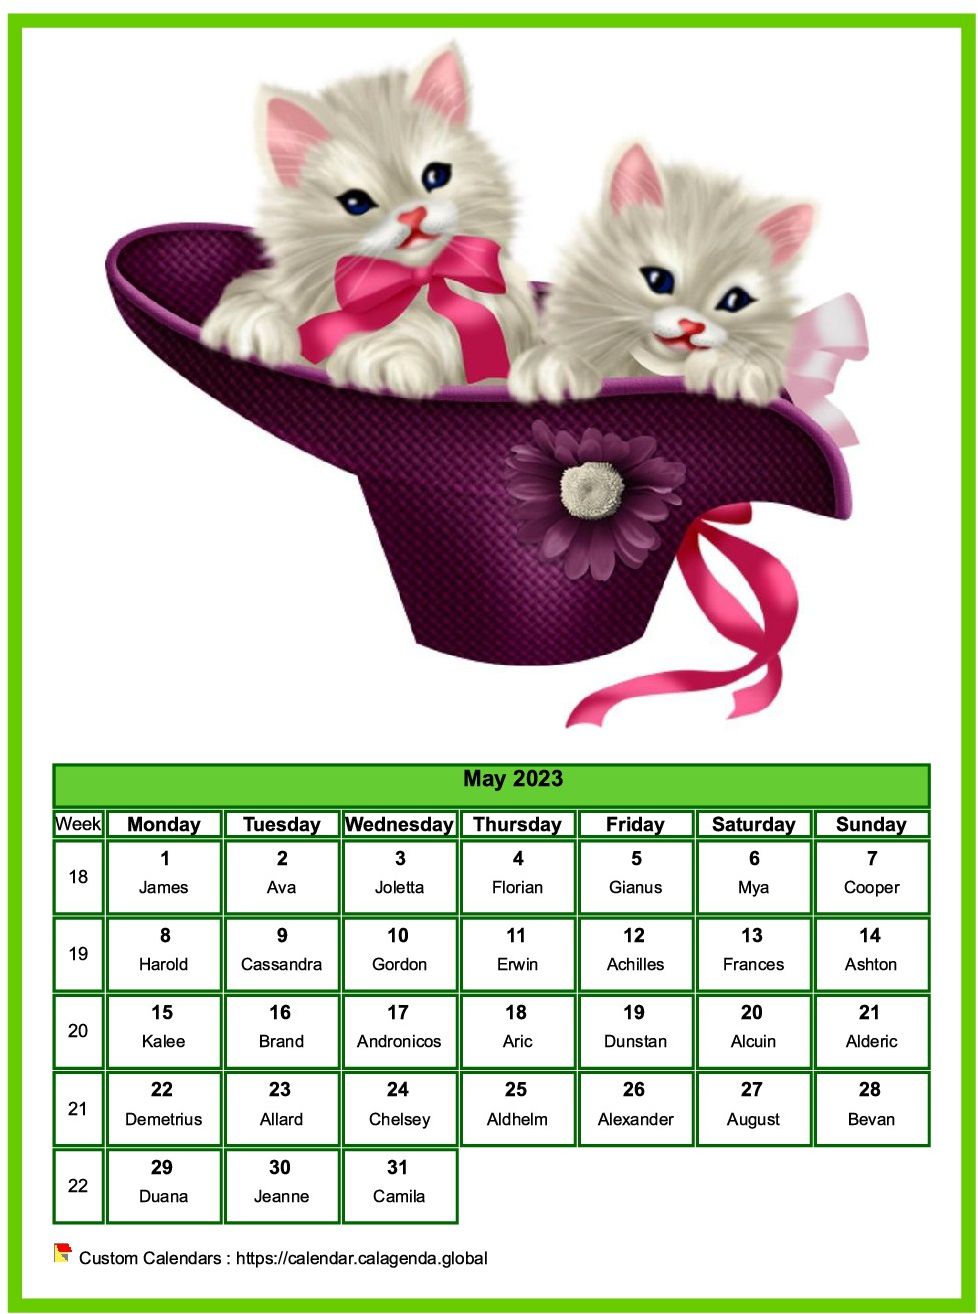 Calendar May 2023 cats